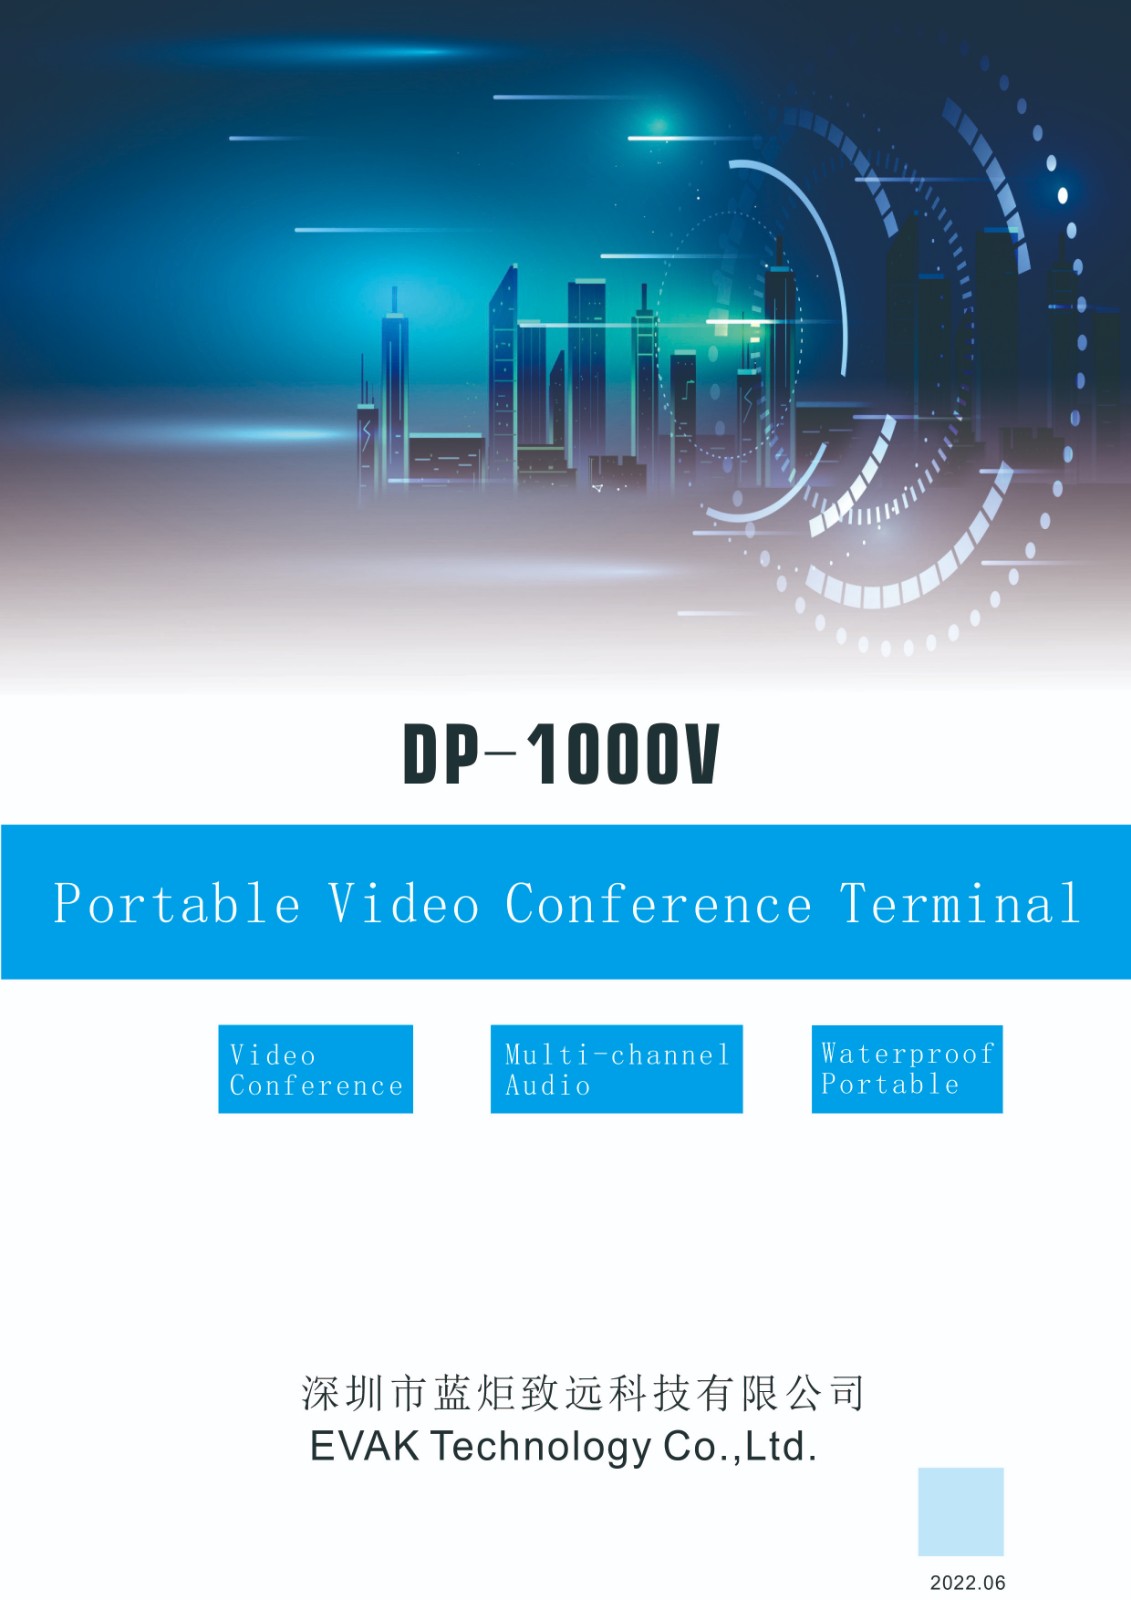 DP-1000V视频会议终端-英文版-1.jpg